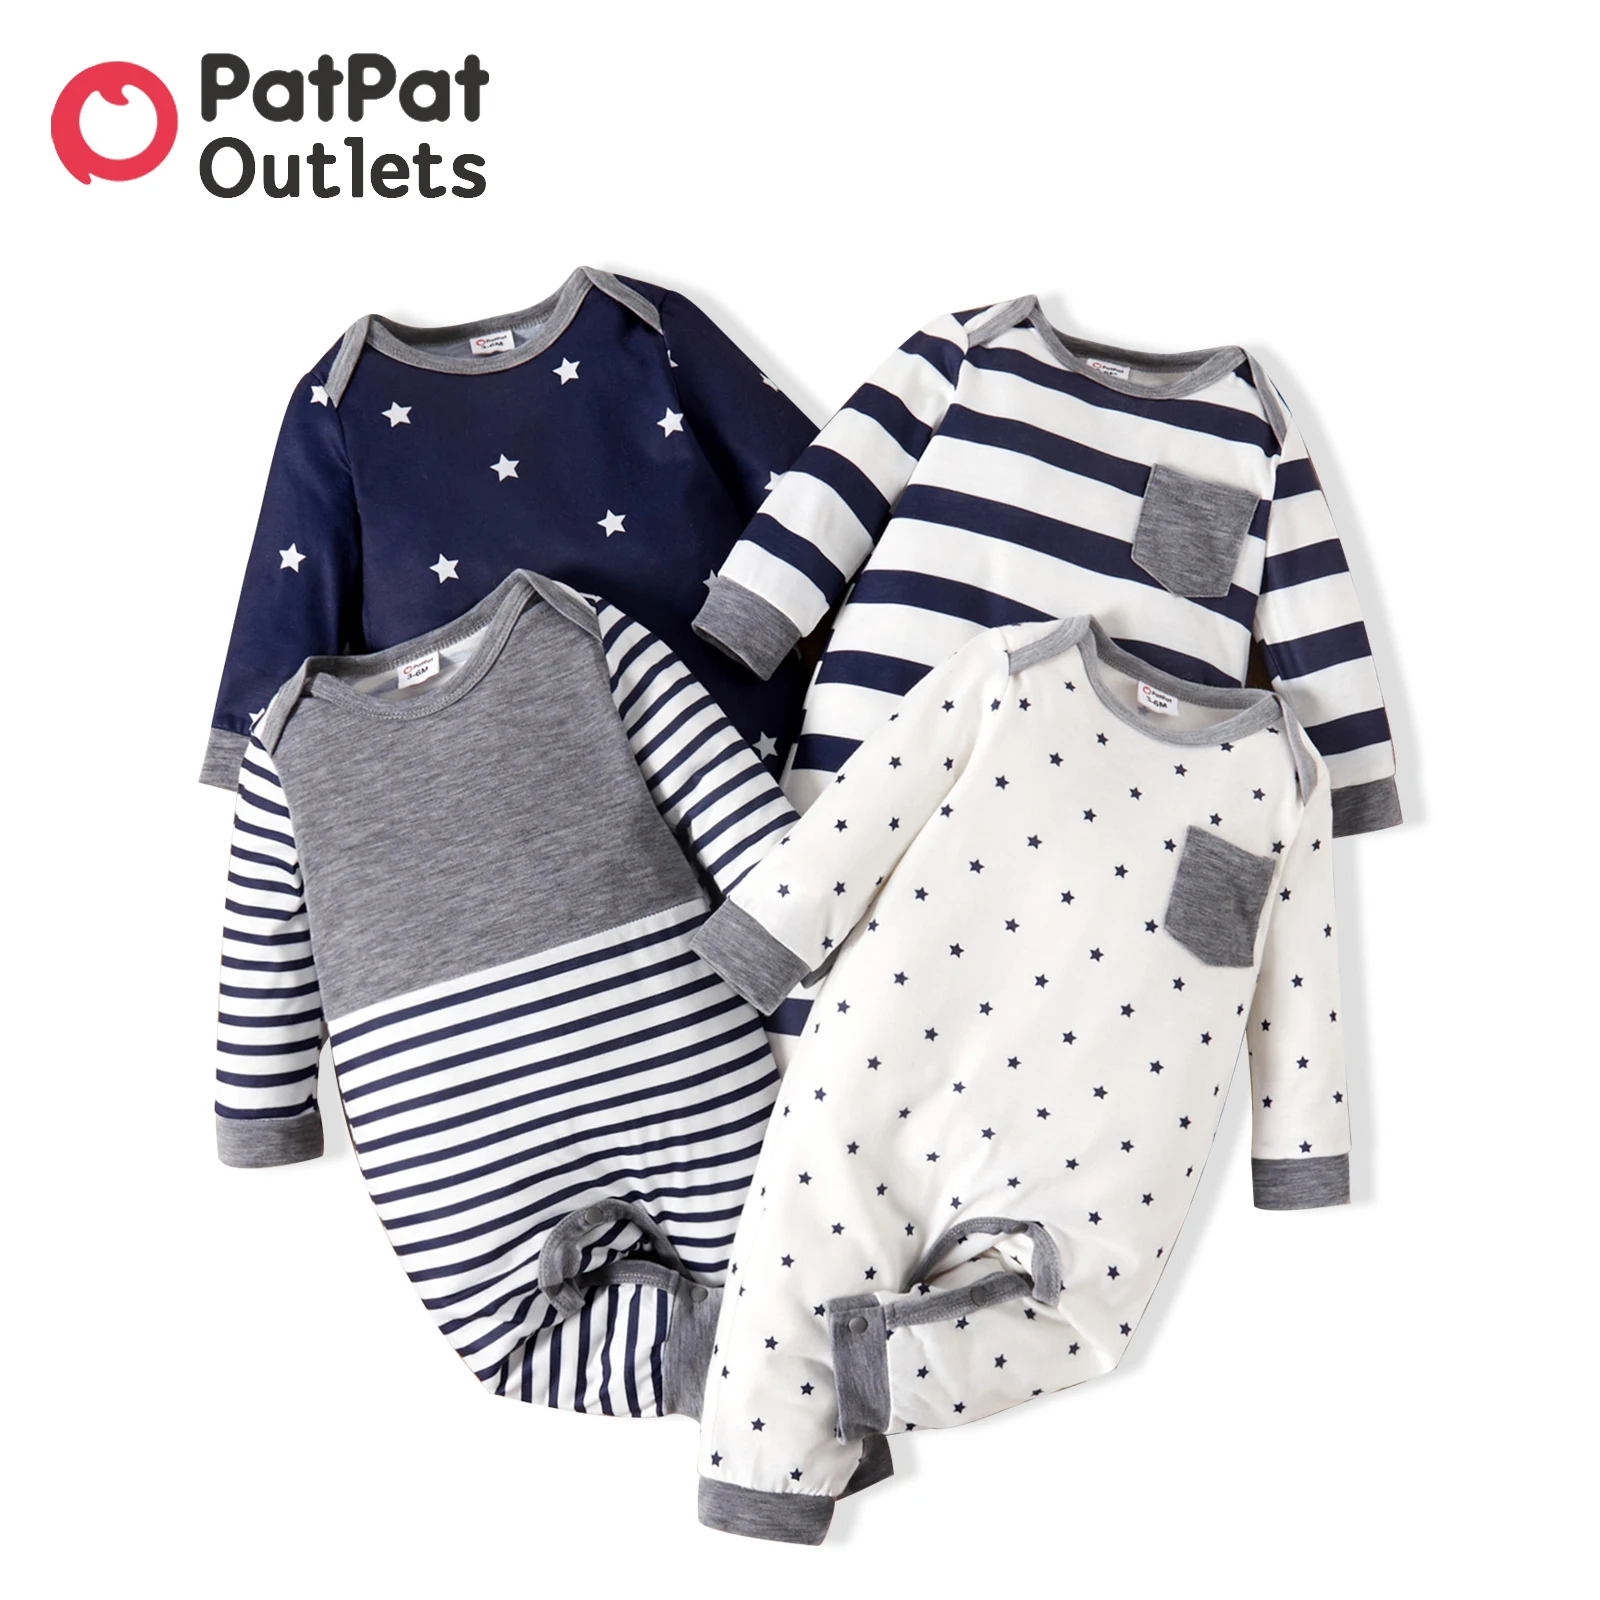 PatPat-ropa de verano para bebé recién nacido, mono informal a la moda, mono de manga larga con estampado de rayas/estrellas